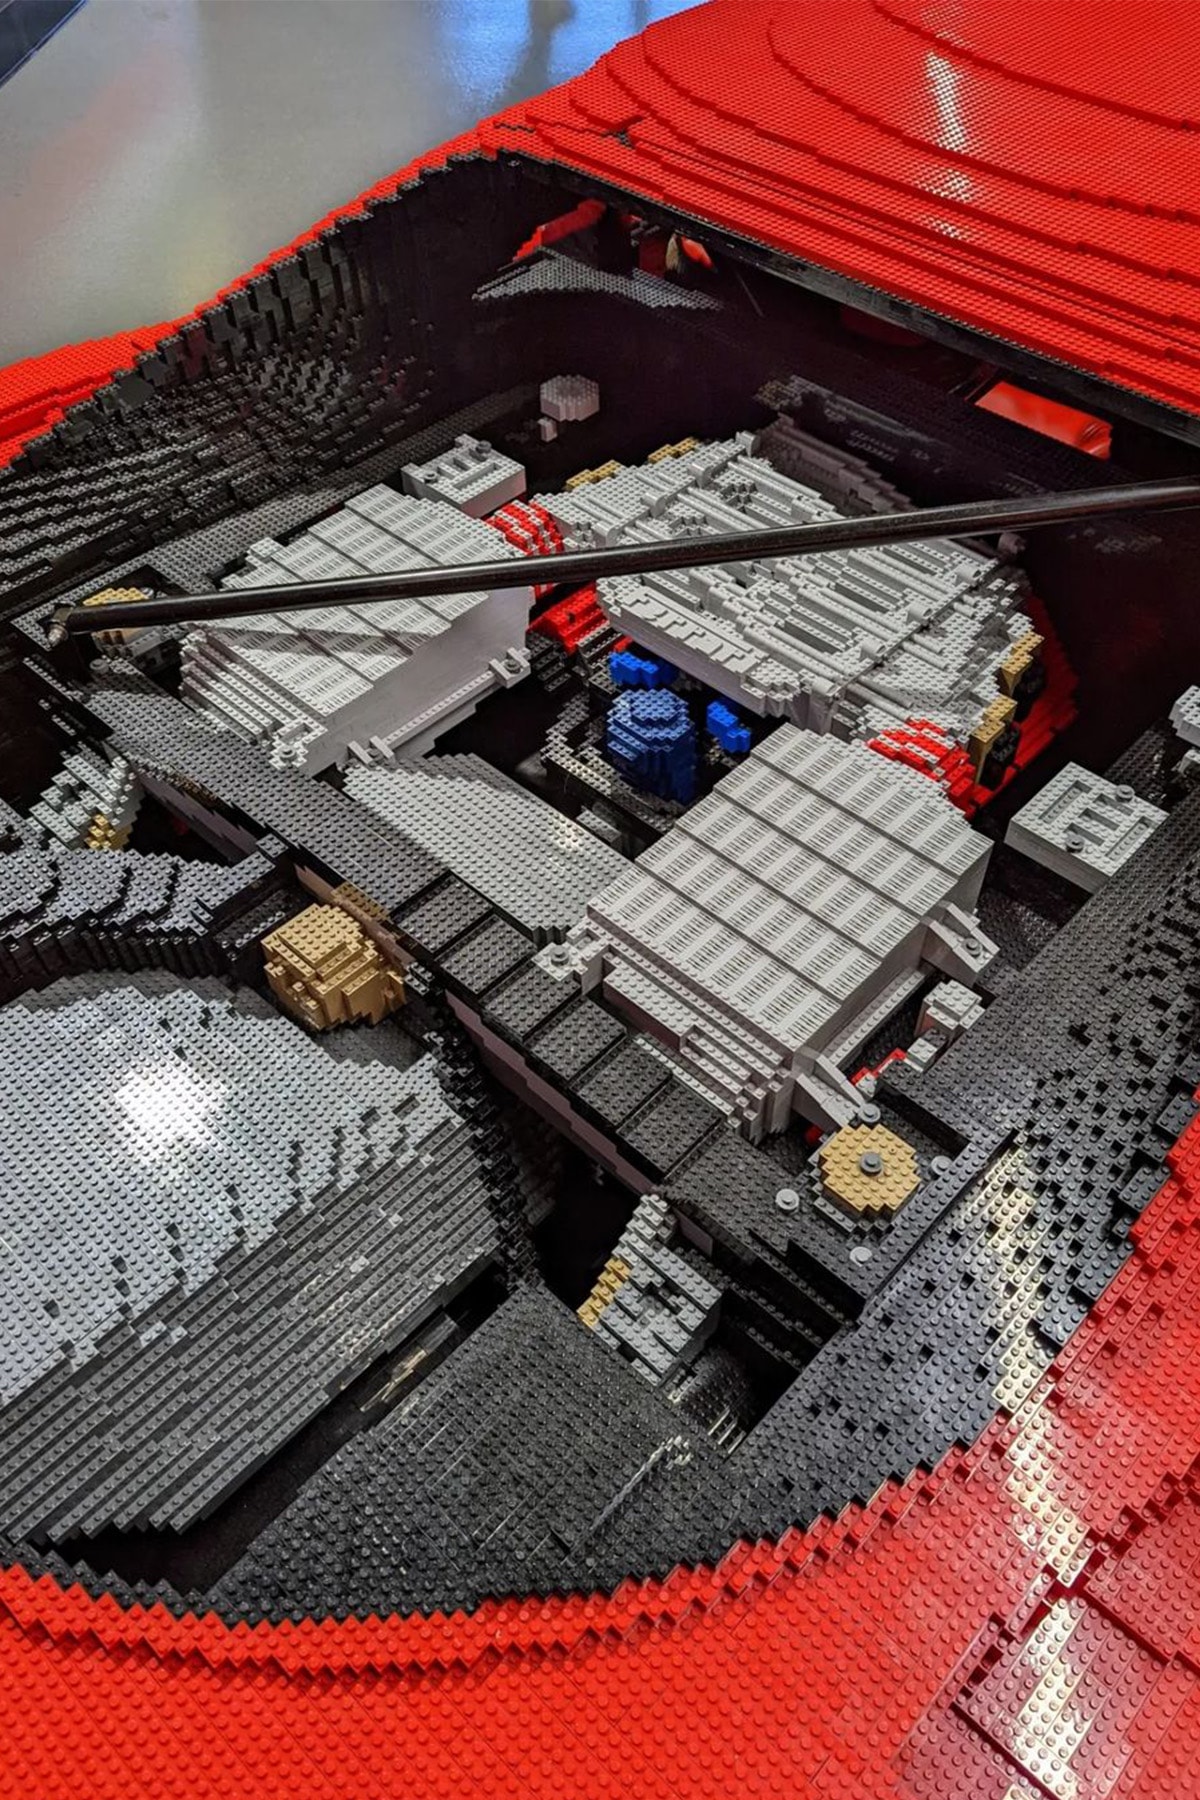 率先近賞 LEGO 實體化 1:1 尺寸 Ferrari F40 積木模型